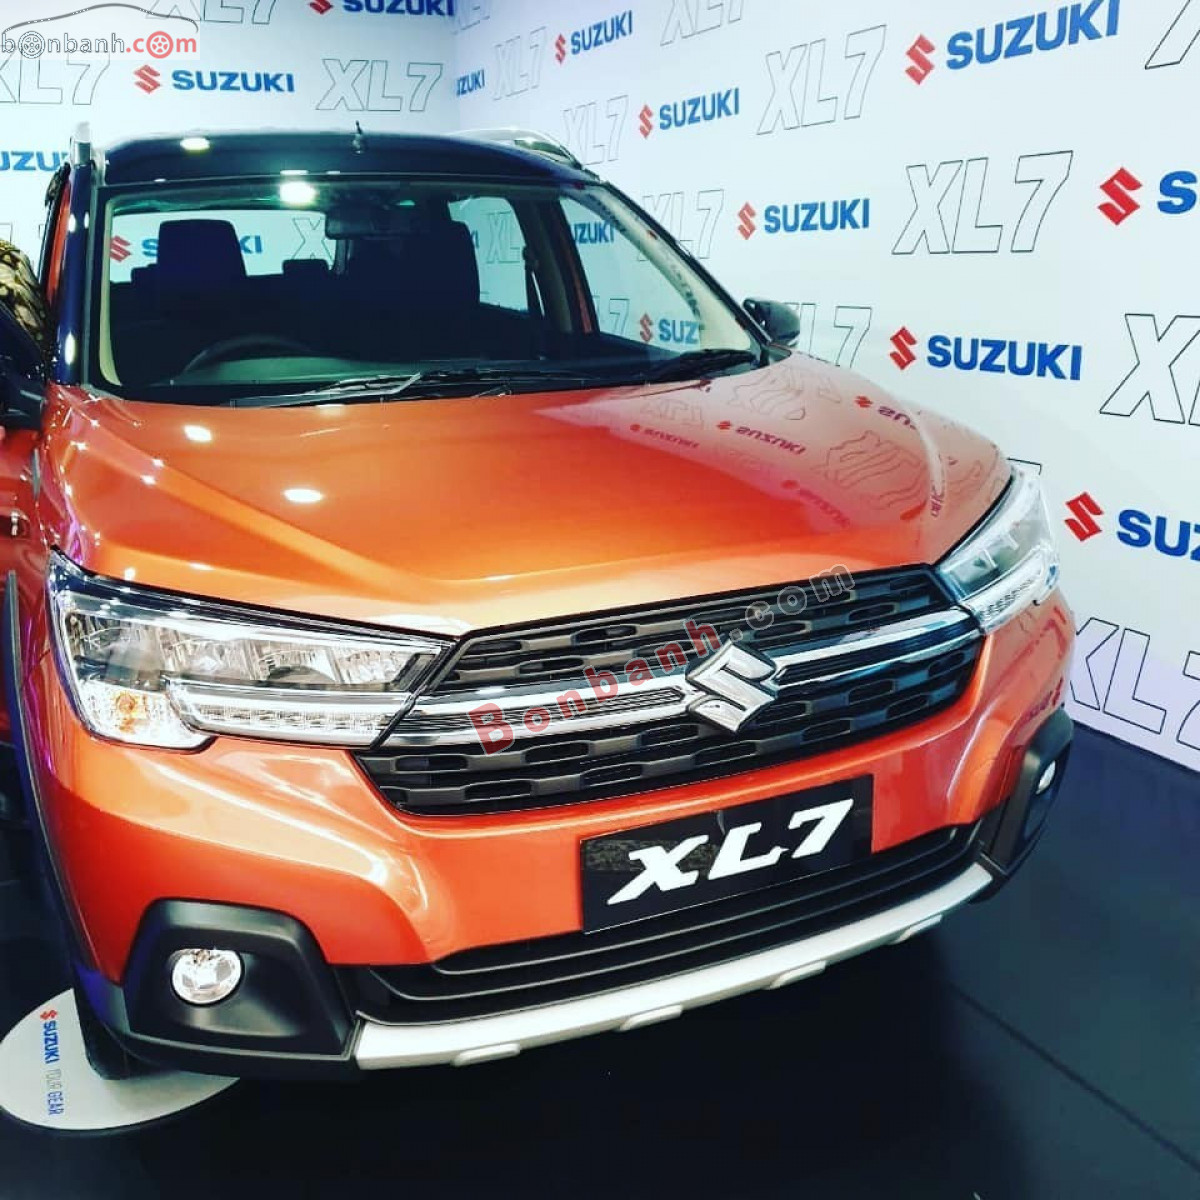 Suzuki XL7  httpssuzukihadong3scom